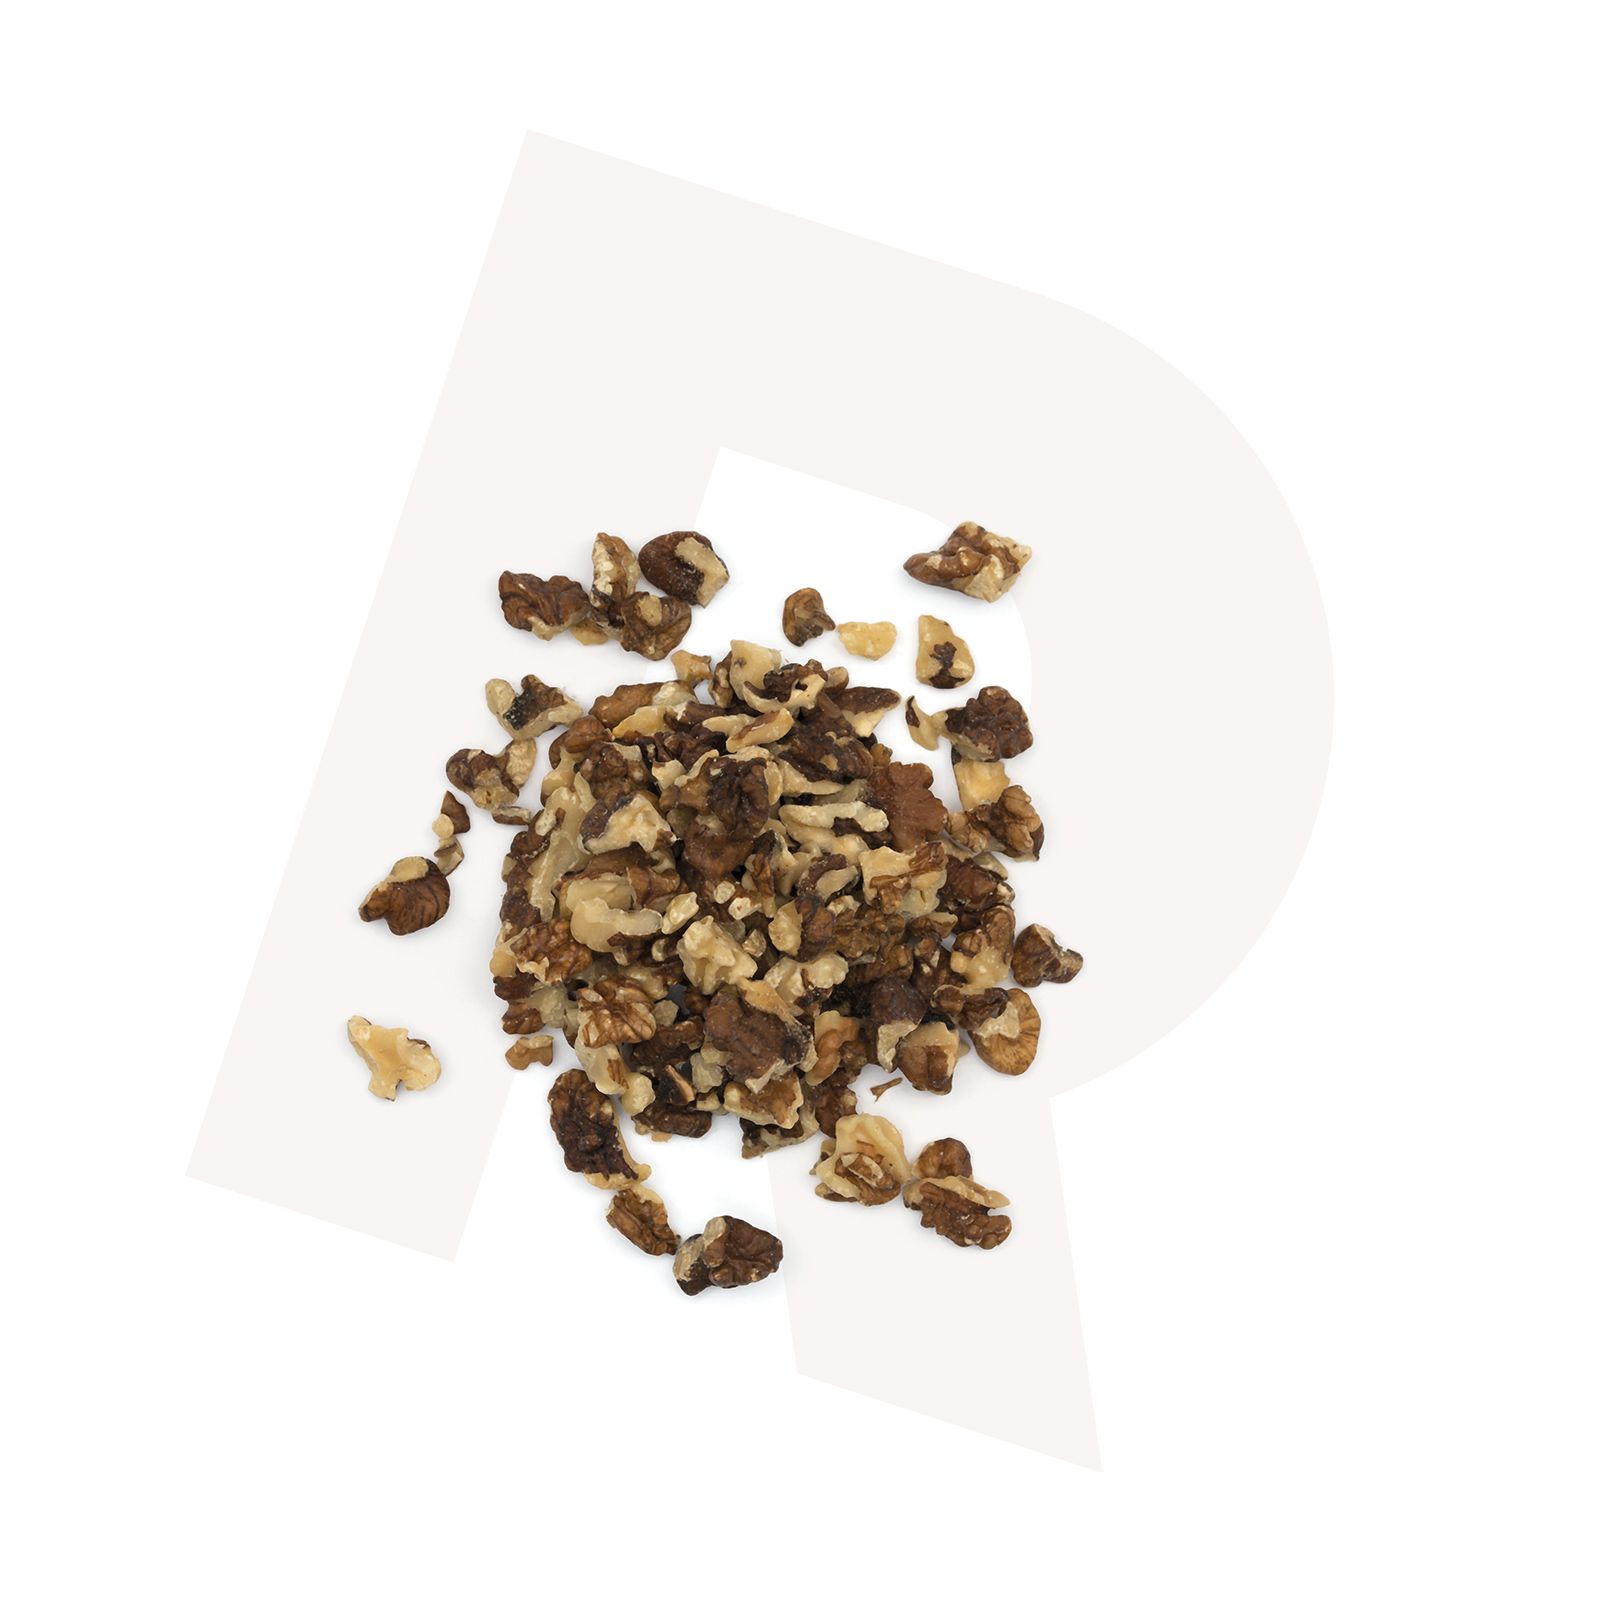 Nuts_crushed-walnuts